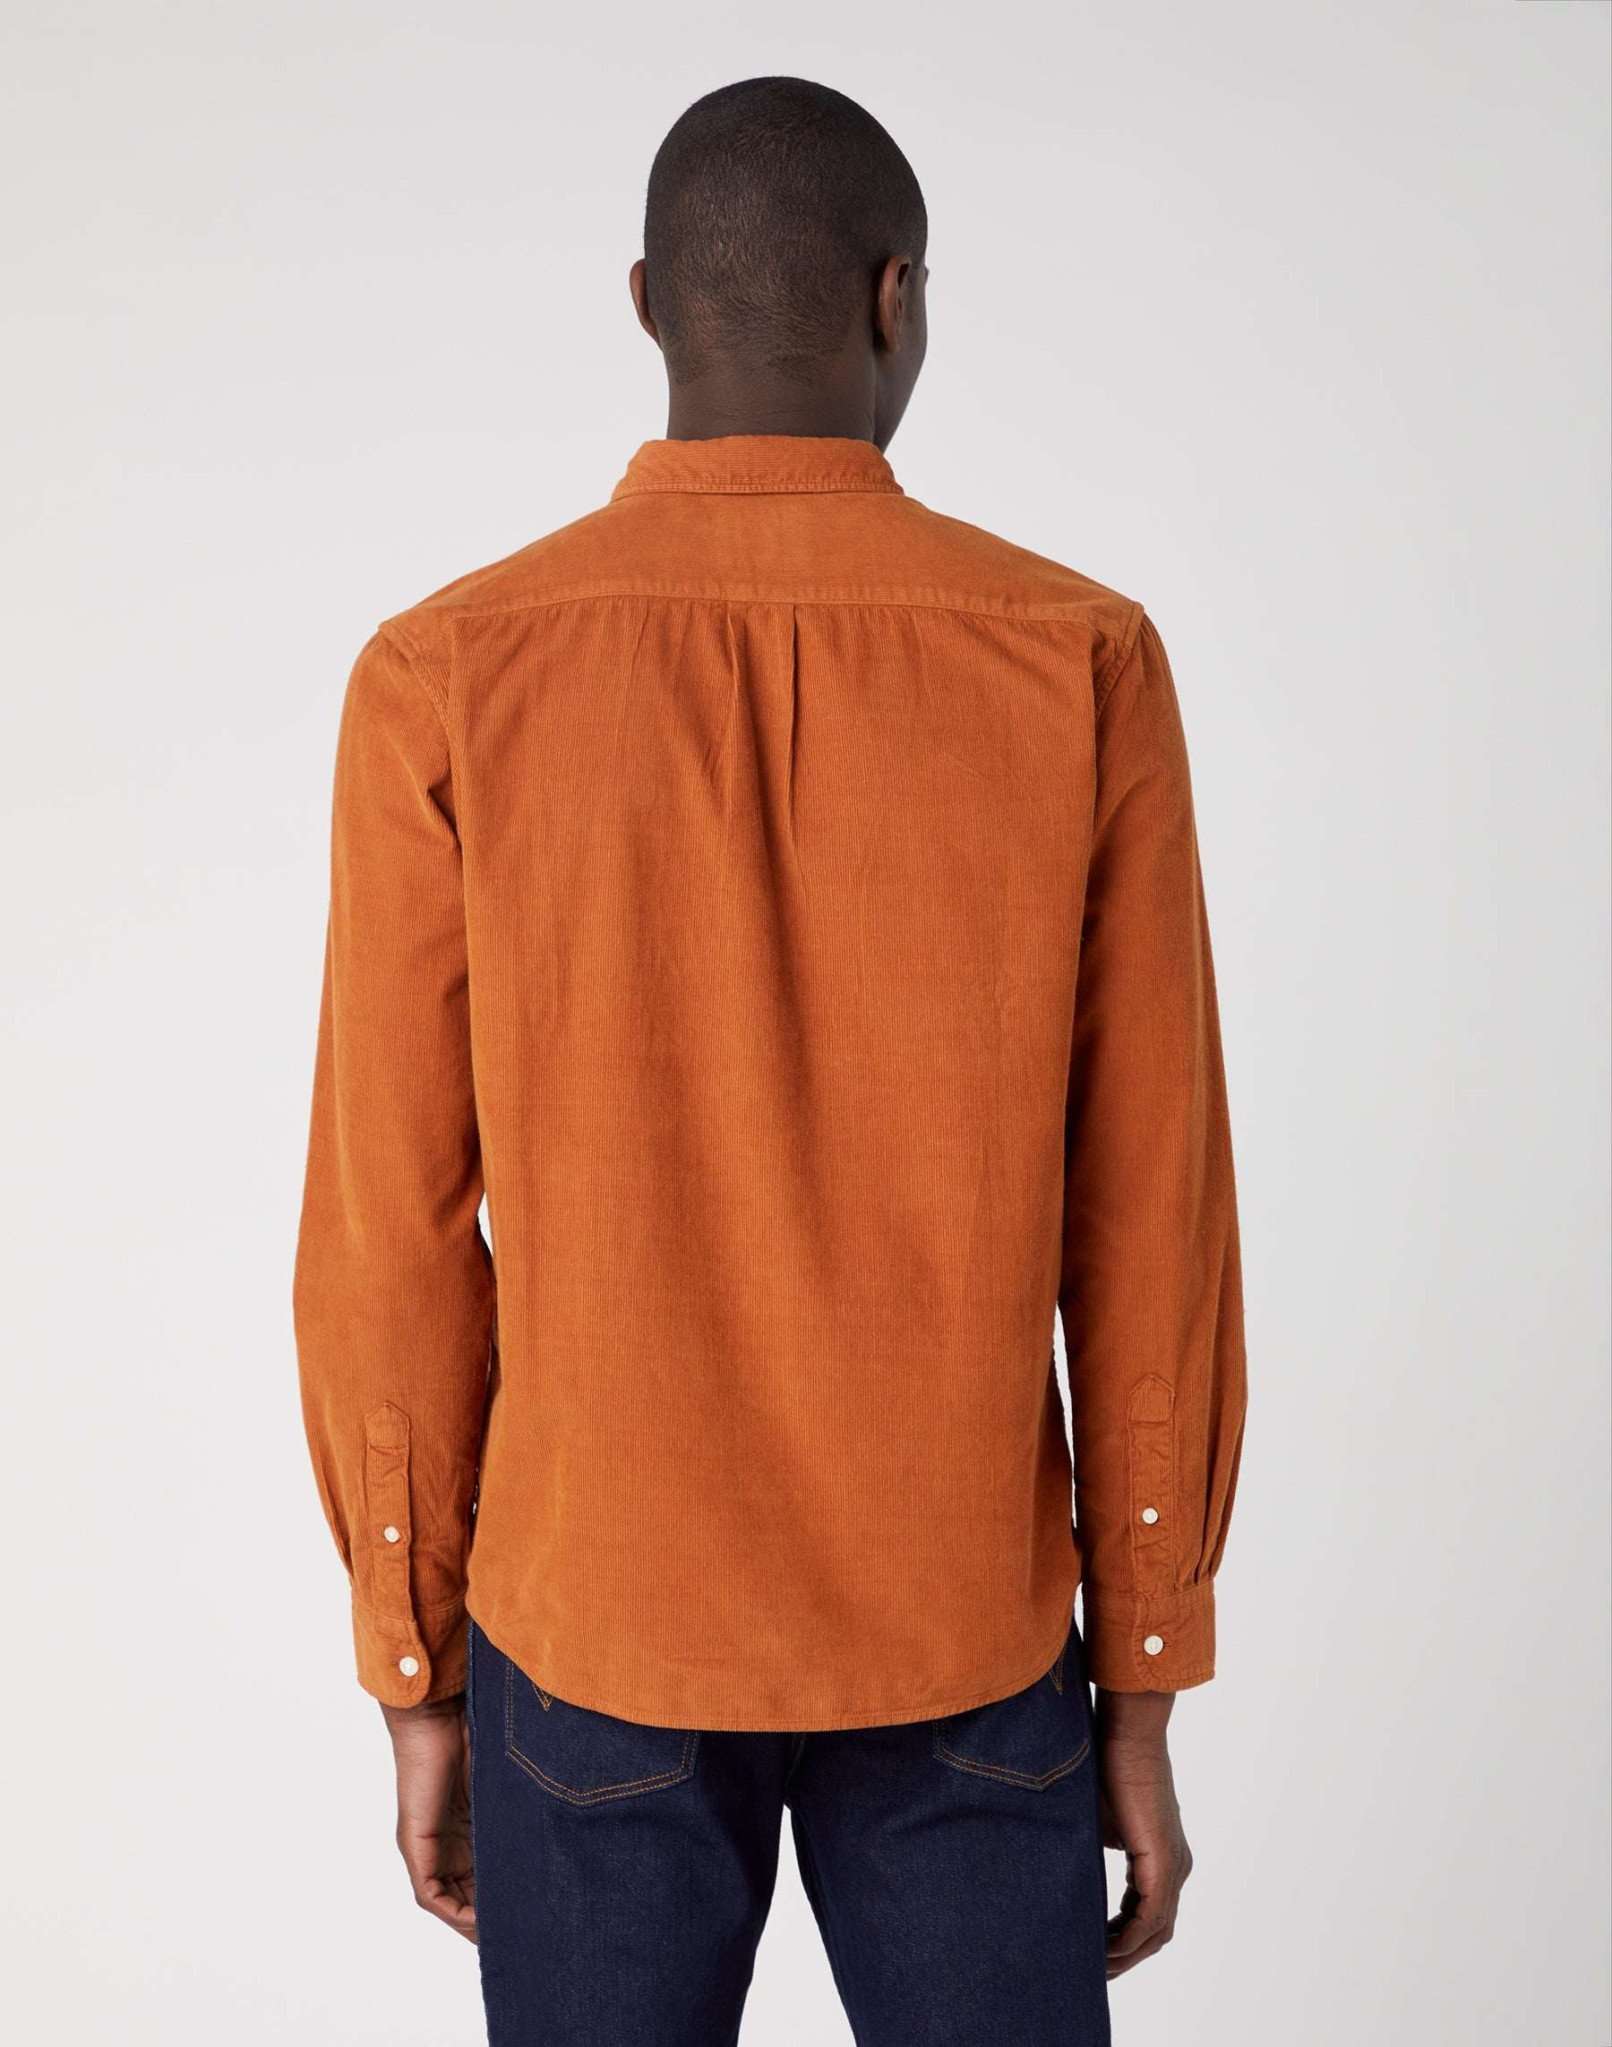 One Pocket Shirt in Leather Brown Hemden Wrangler   